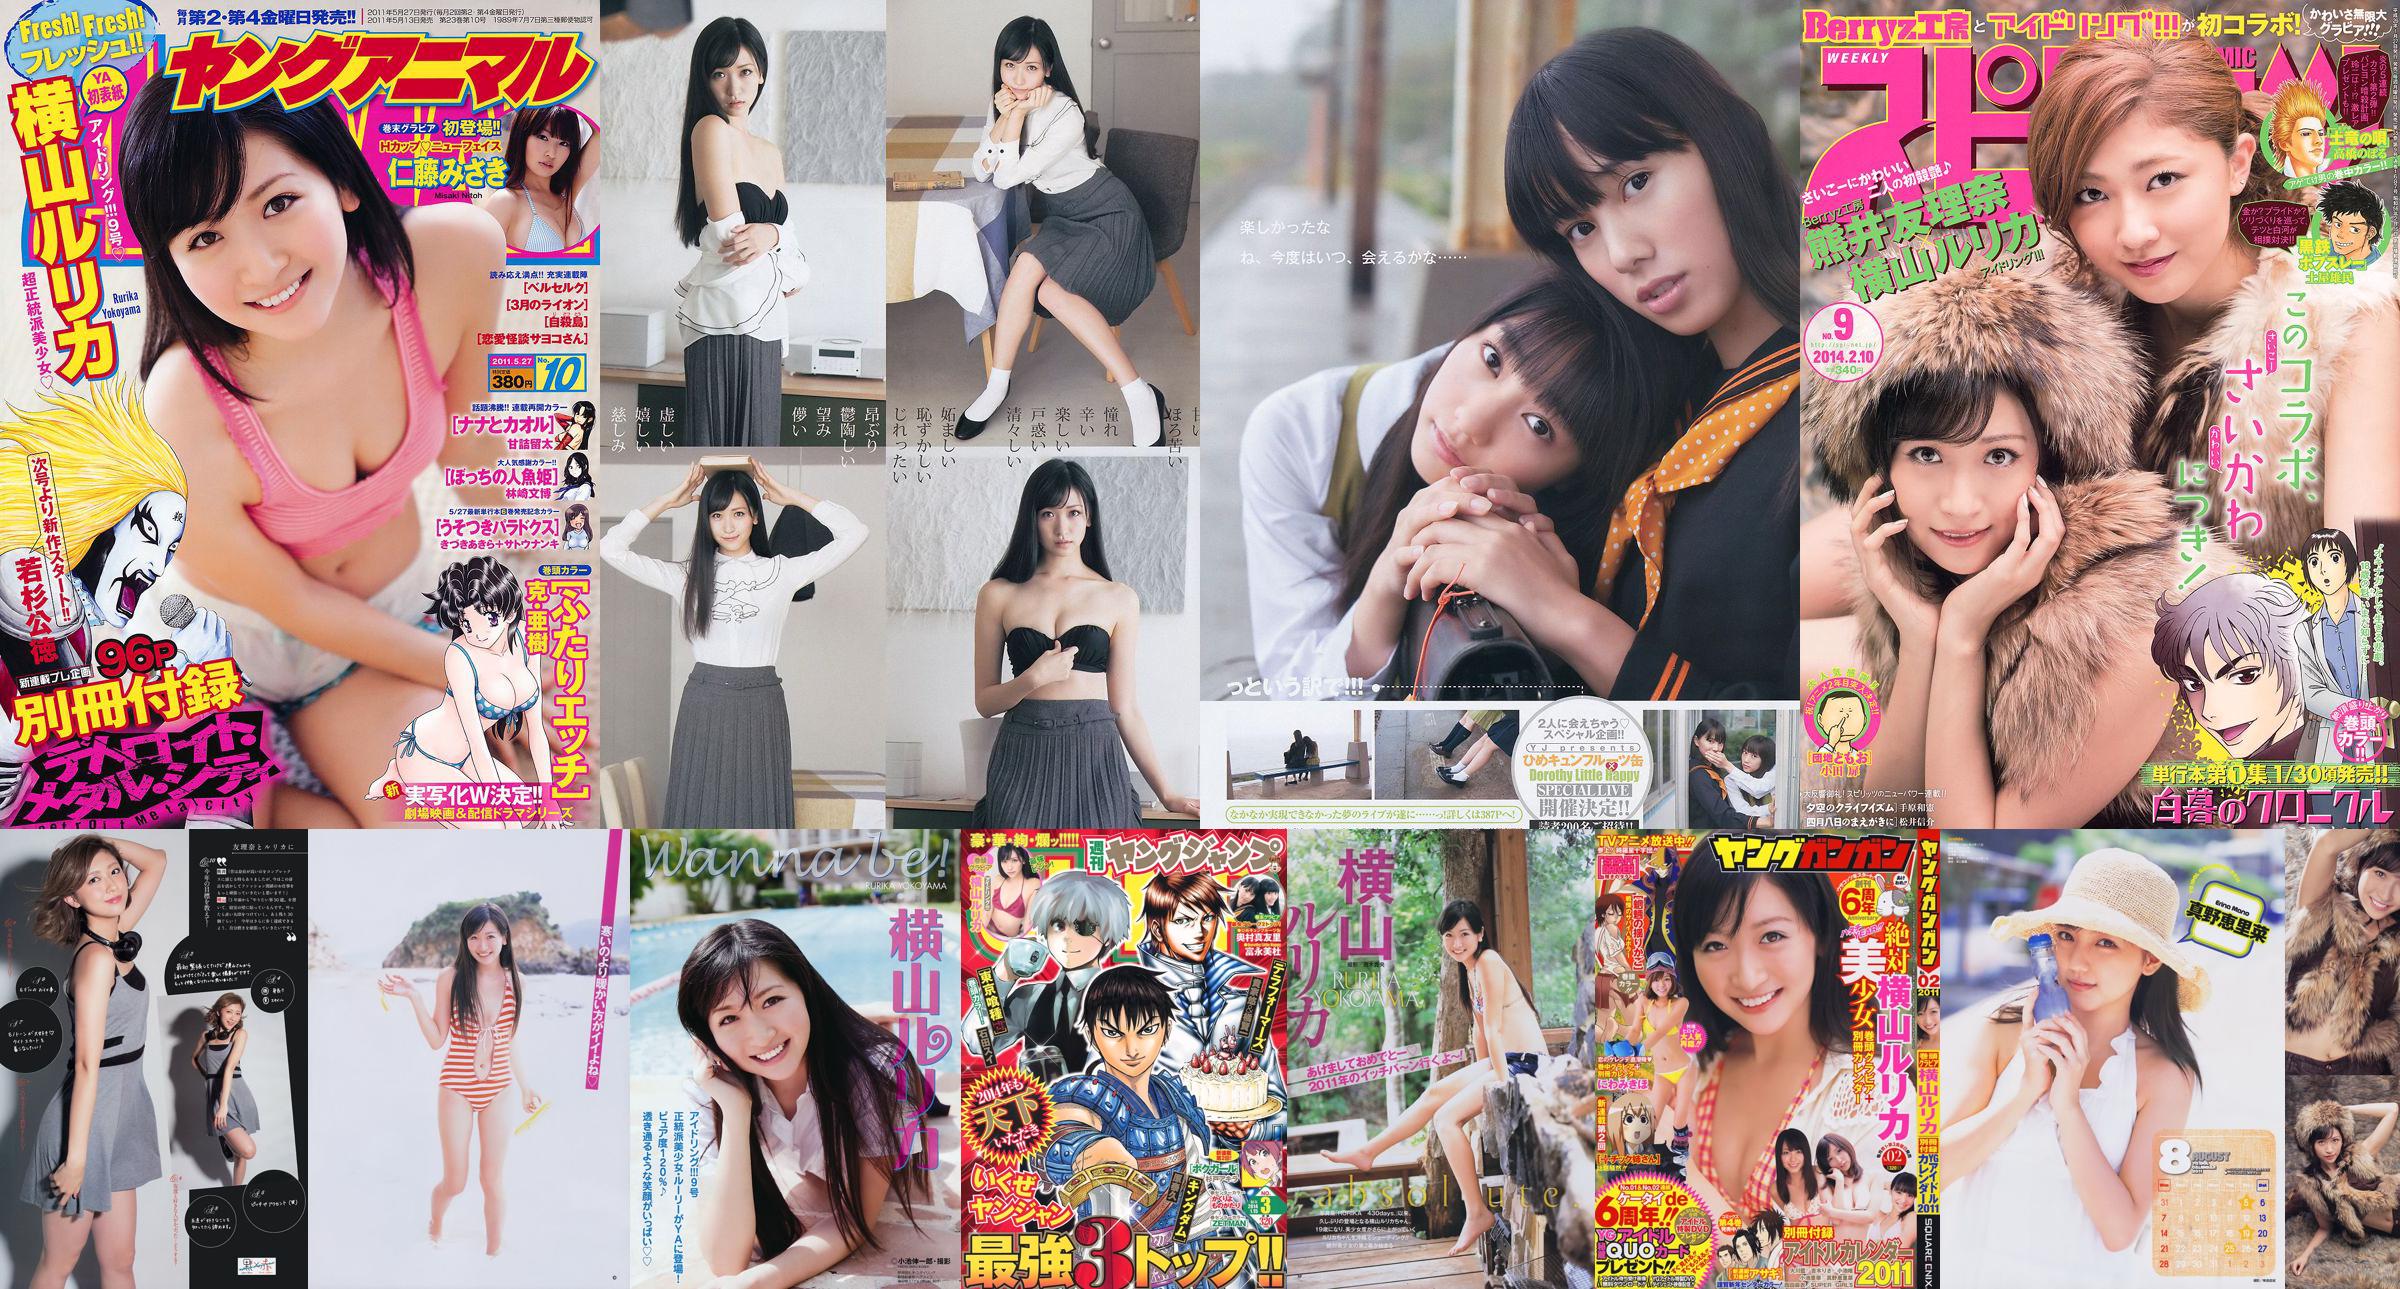 [Young Gangan] Rurika Yokoyama 2011 No.02 Photo Magazine No.324032 Pagina 10